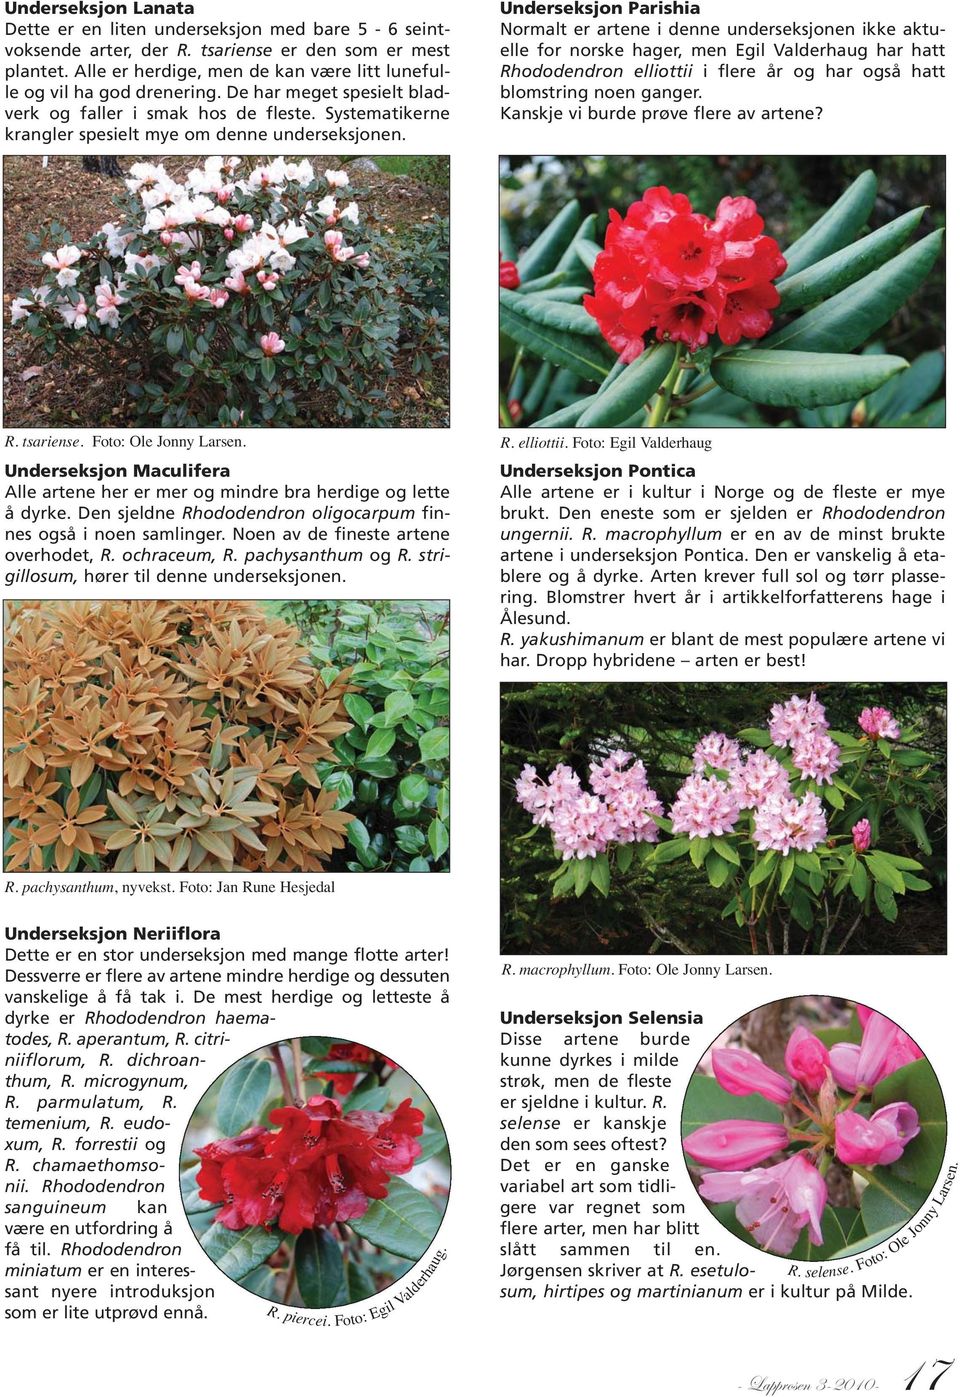 Underseksjon Parishia Normalt er artene i denne underseksjonen ikke aktuelle for norske hager, men Egil Valderhaug har hatt Rhododendron elliottii i flere år og har også hatt blomstring noen ganger.